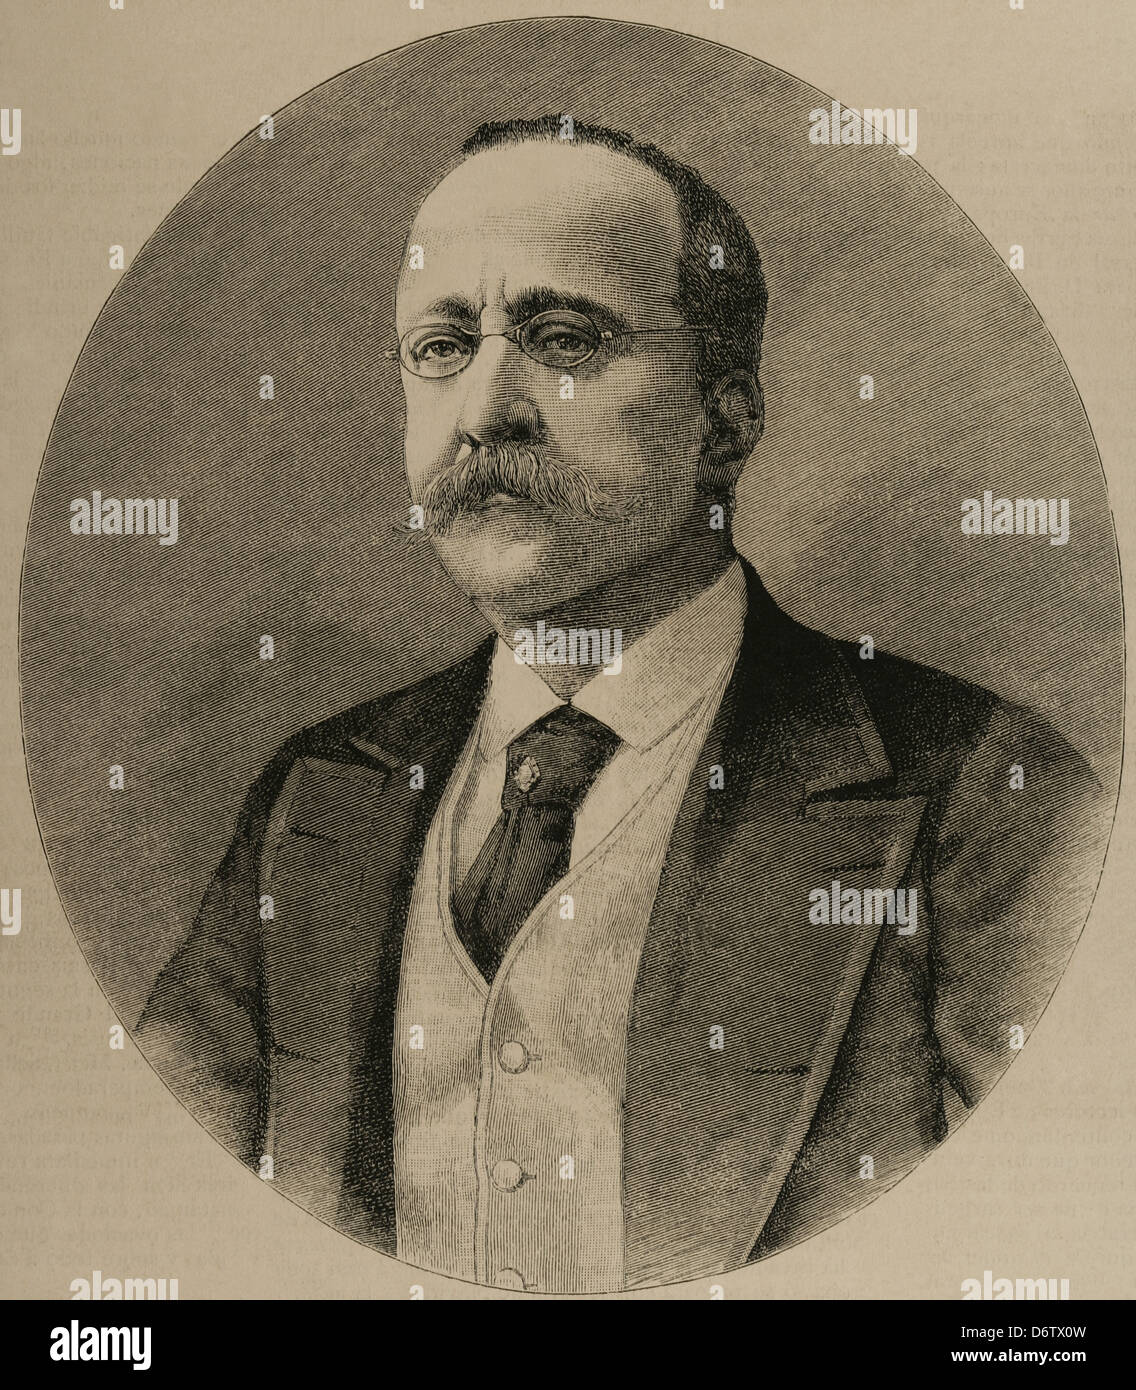 Enrique Hernández (nacido en 1828). El periodista español y editor de El Imparcial. Grabado. Foto de stock